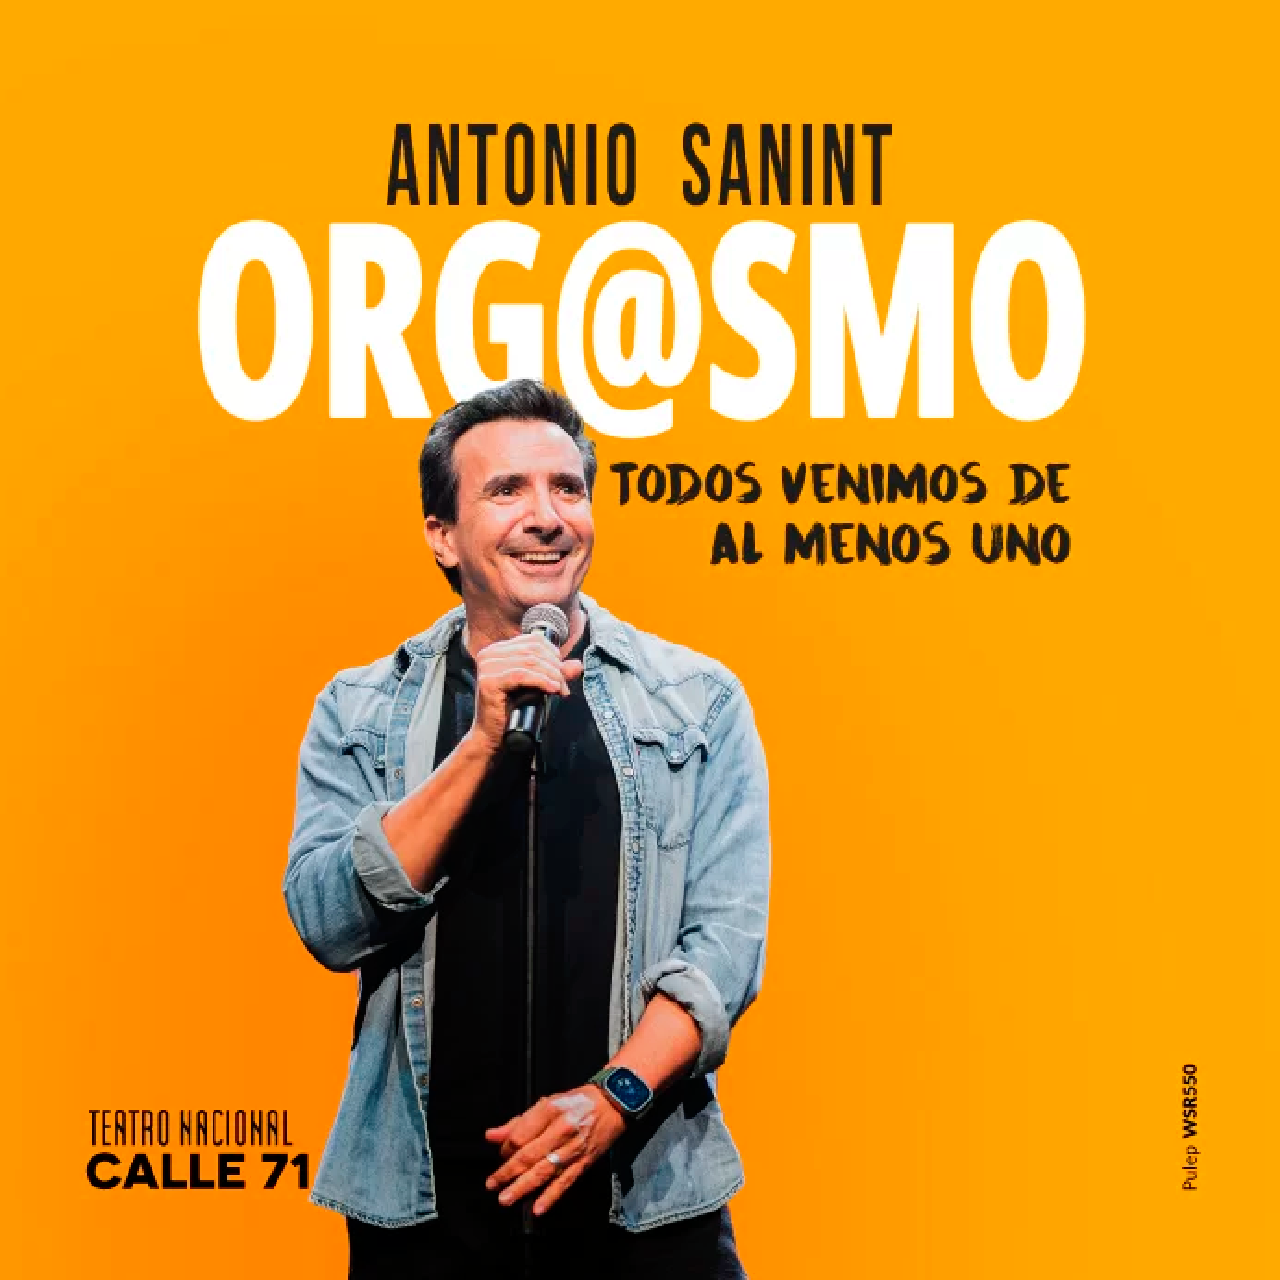 Antonio Sanint regresa con la segunda temporada de ‘Org@smo’ en el Teatro Nacional